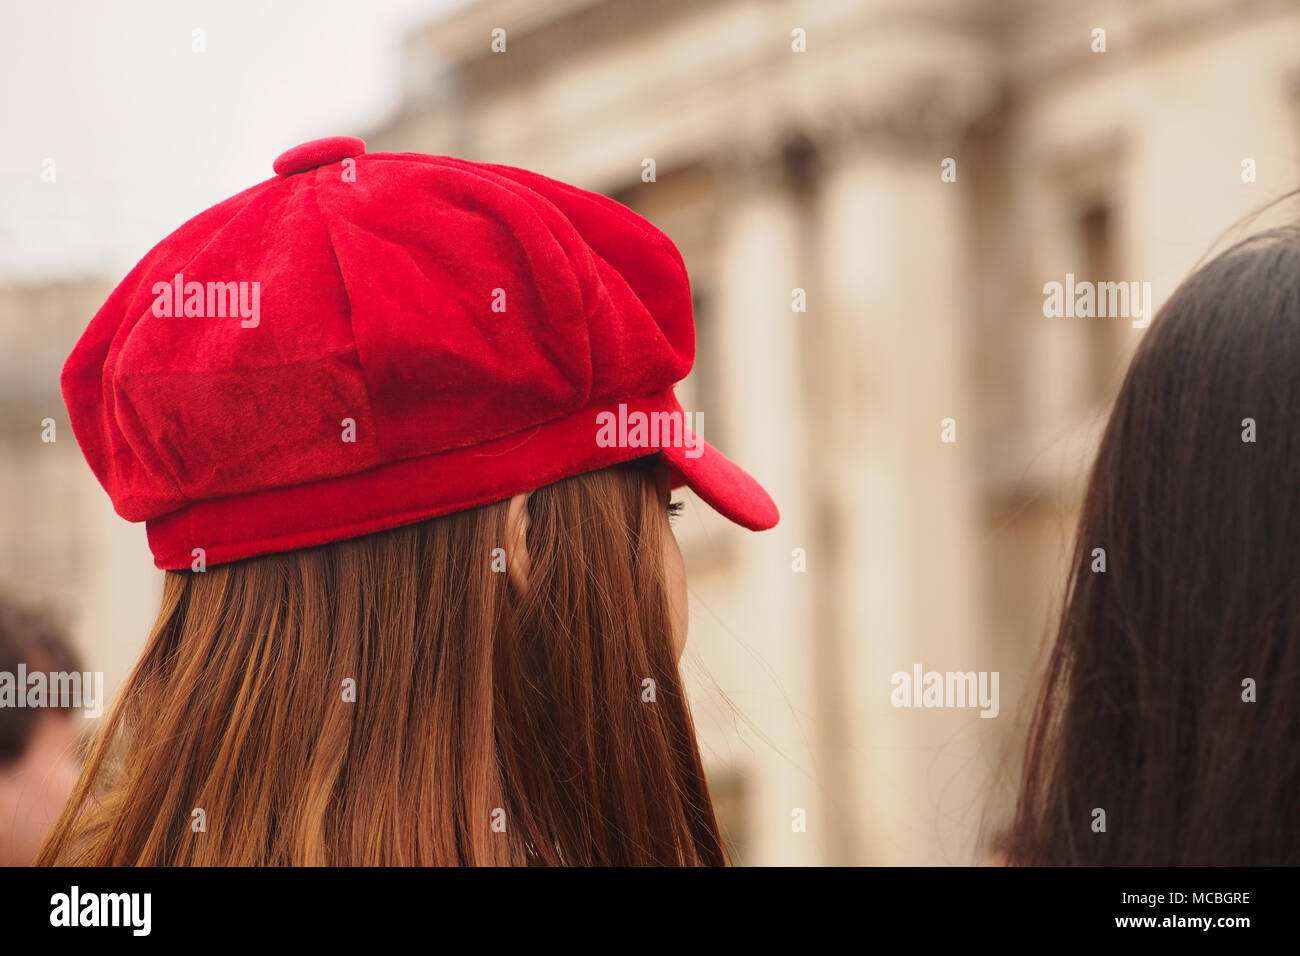 La tête d'une jeune femme aux longs cheveux bruns et portant un chapeau rouge à Trafalgar Square, Londres Banque D'Images